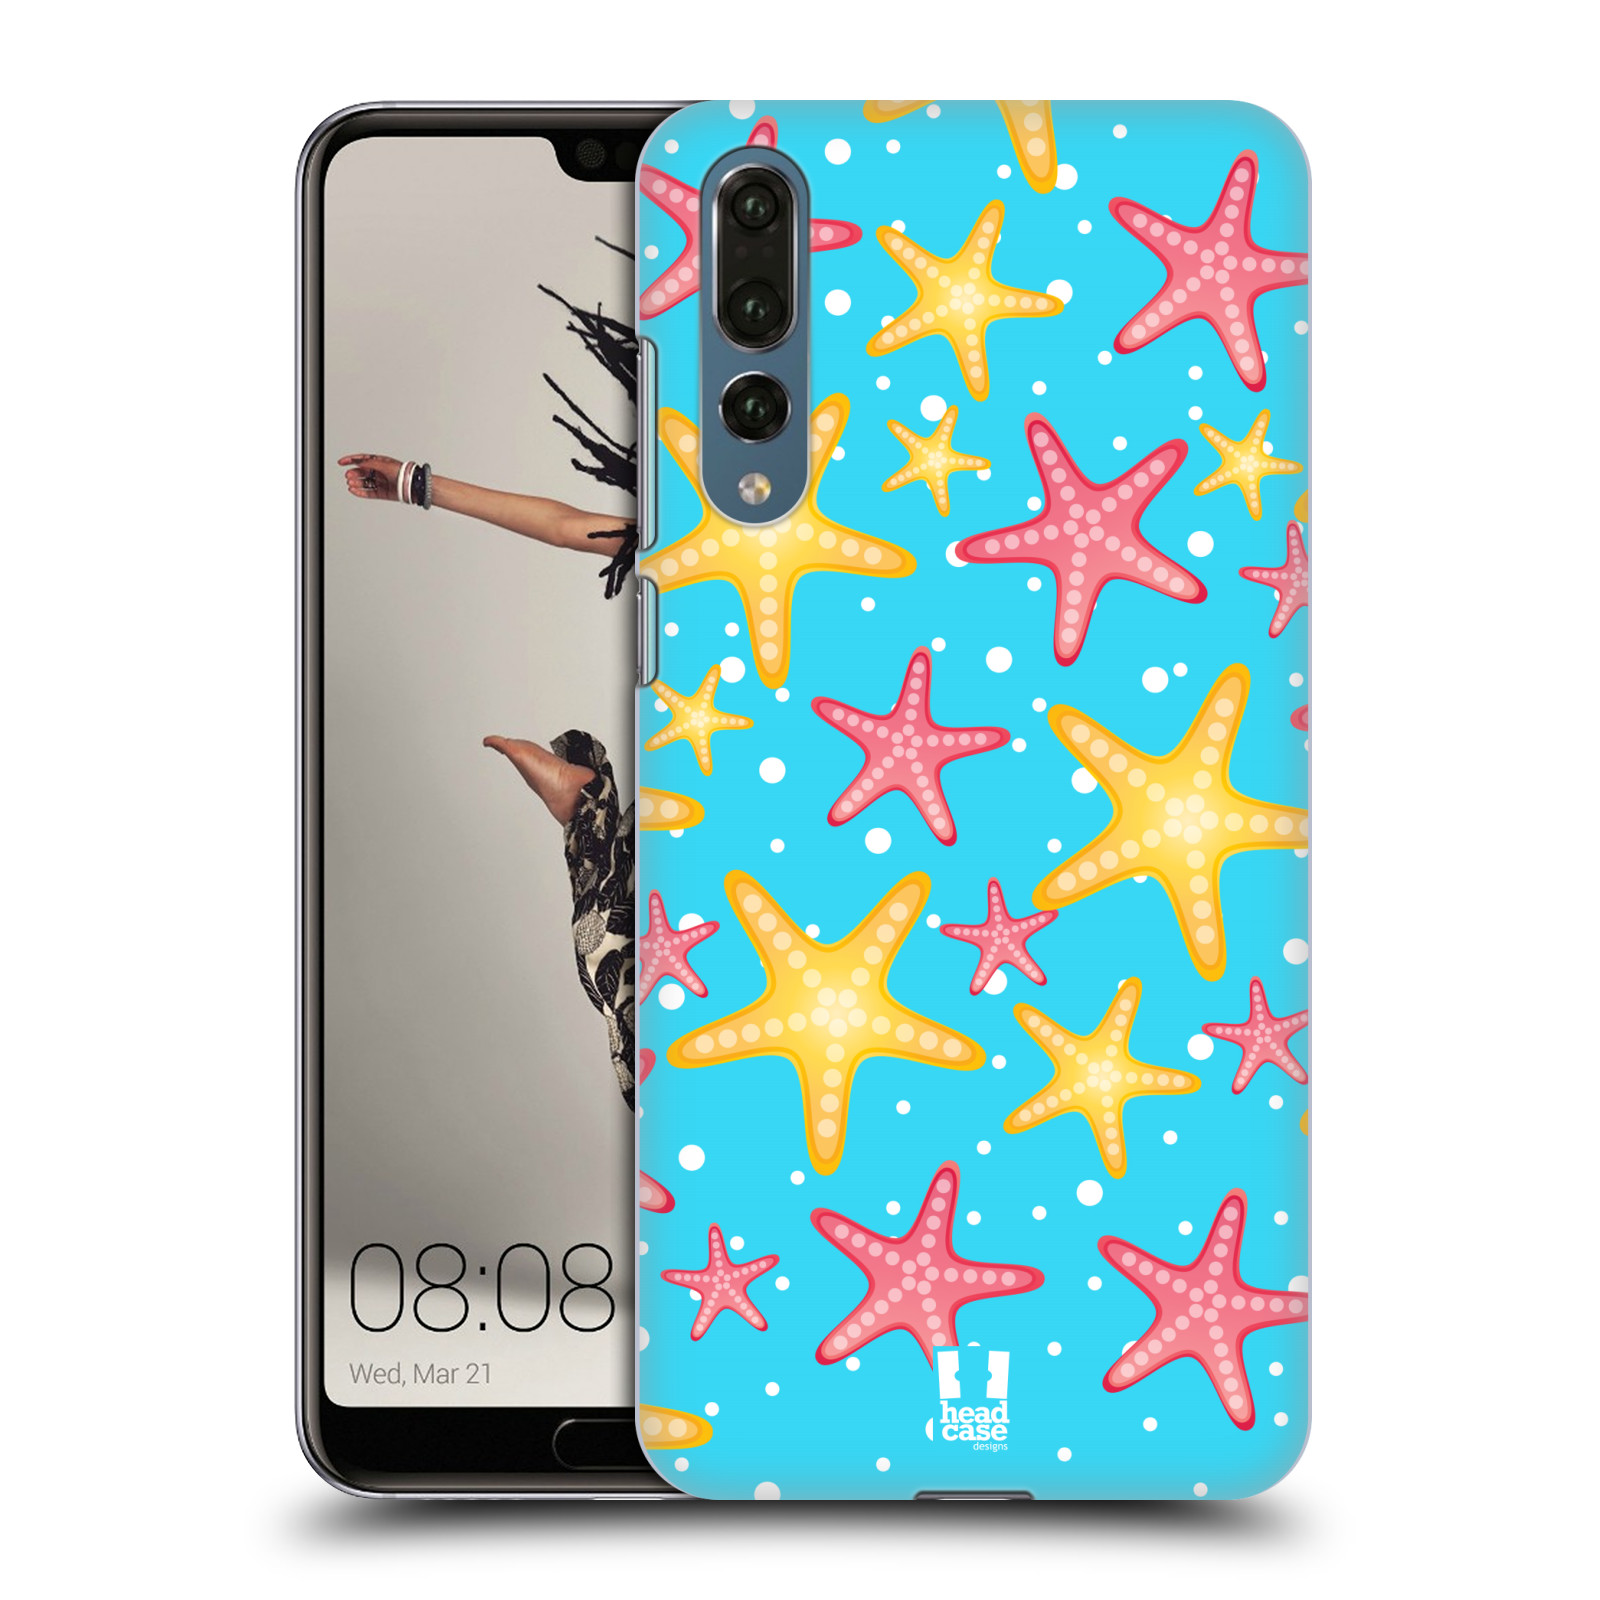 Zadní obal pro mobil Huawei P20 PRO - HEAD CASE - kreslený mořský vzor hvězda